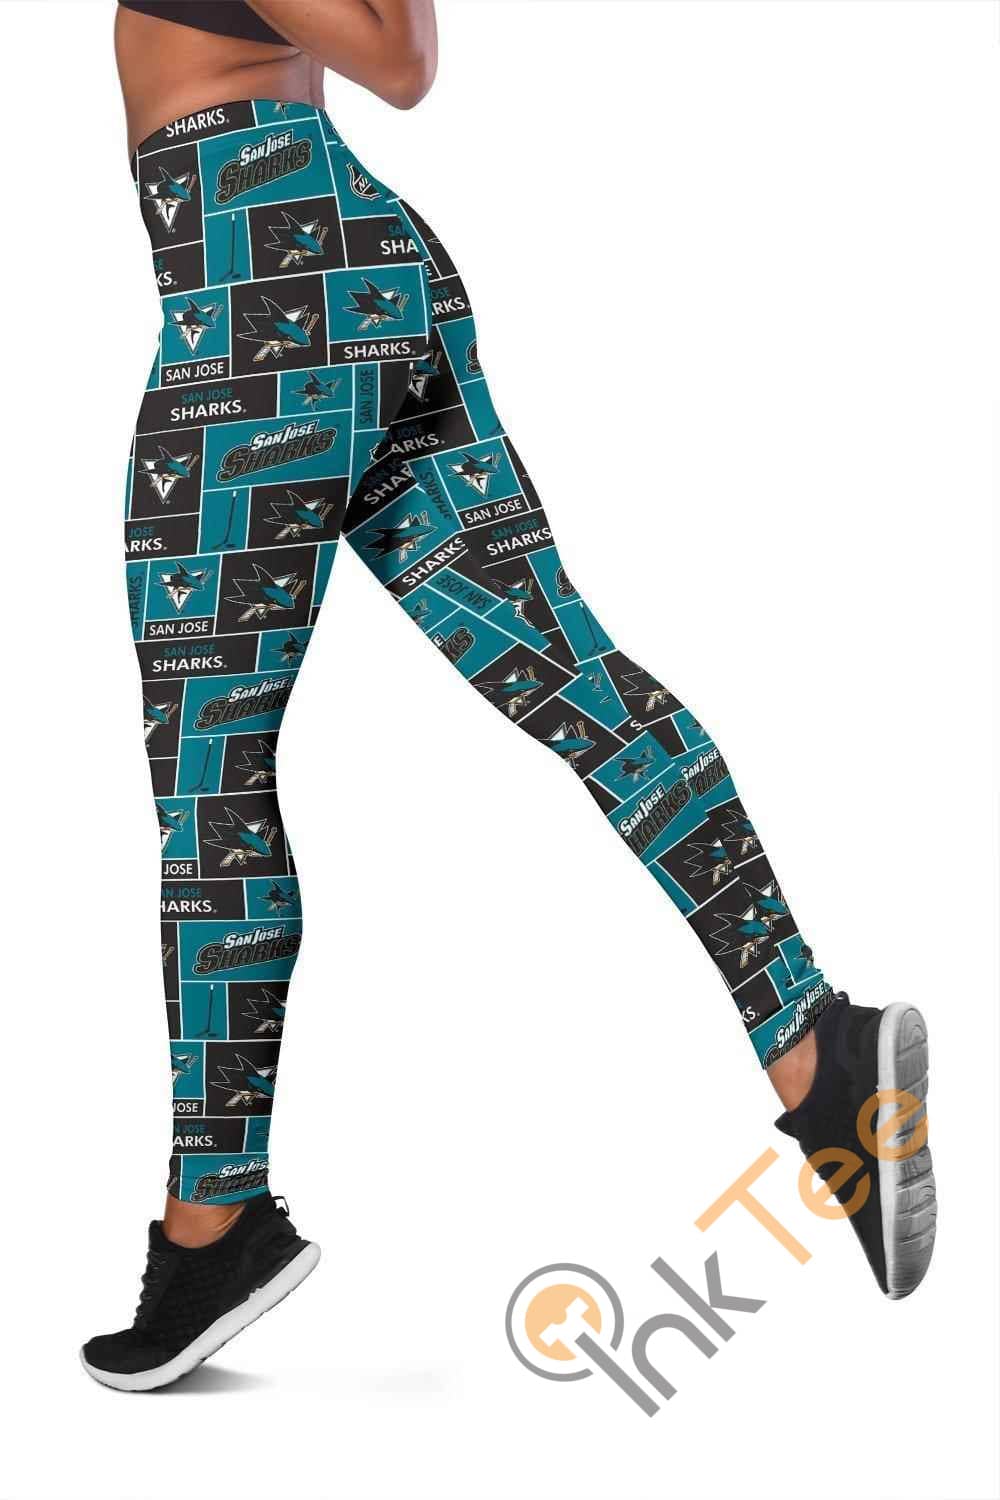 Inktee Store - San Jose Sharks 3D All Over Print For Yoga Fitness Women'S Leggings Image